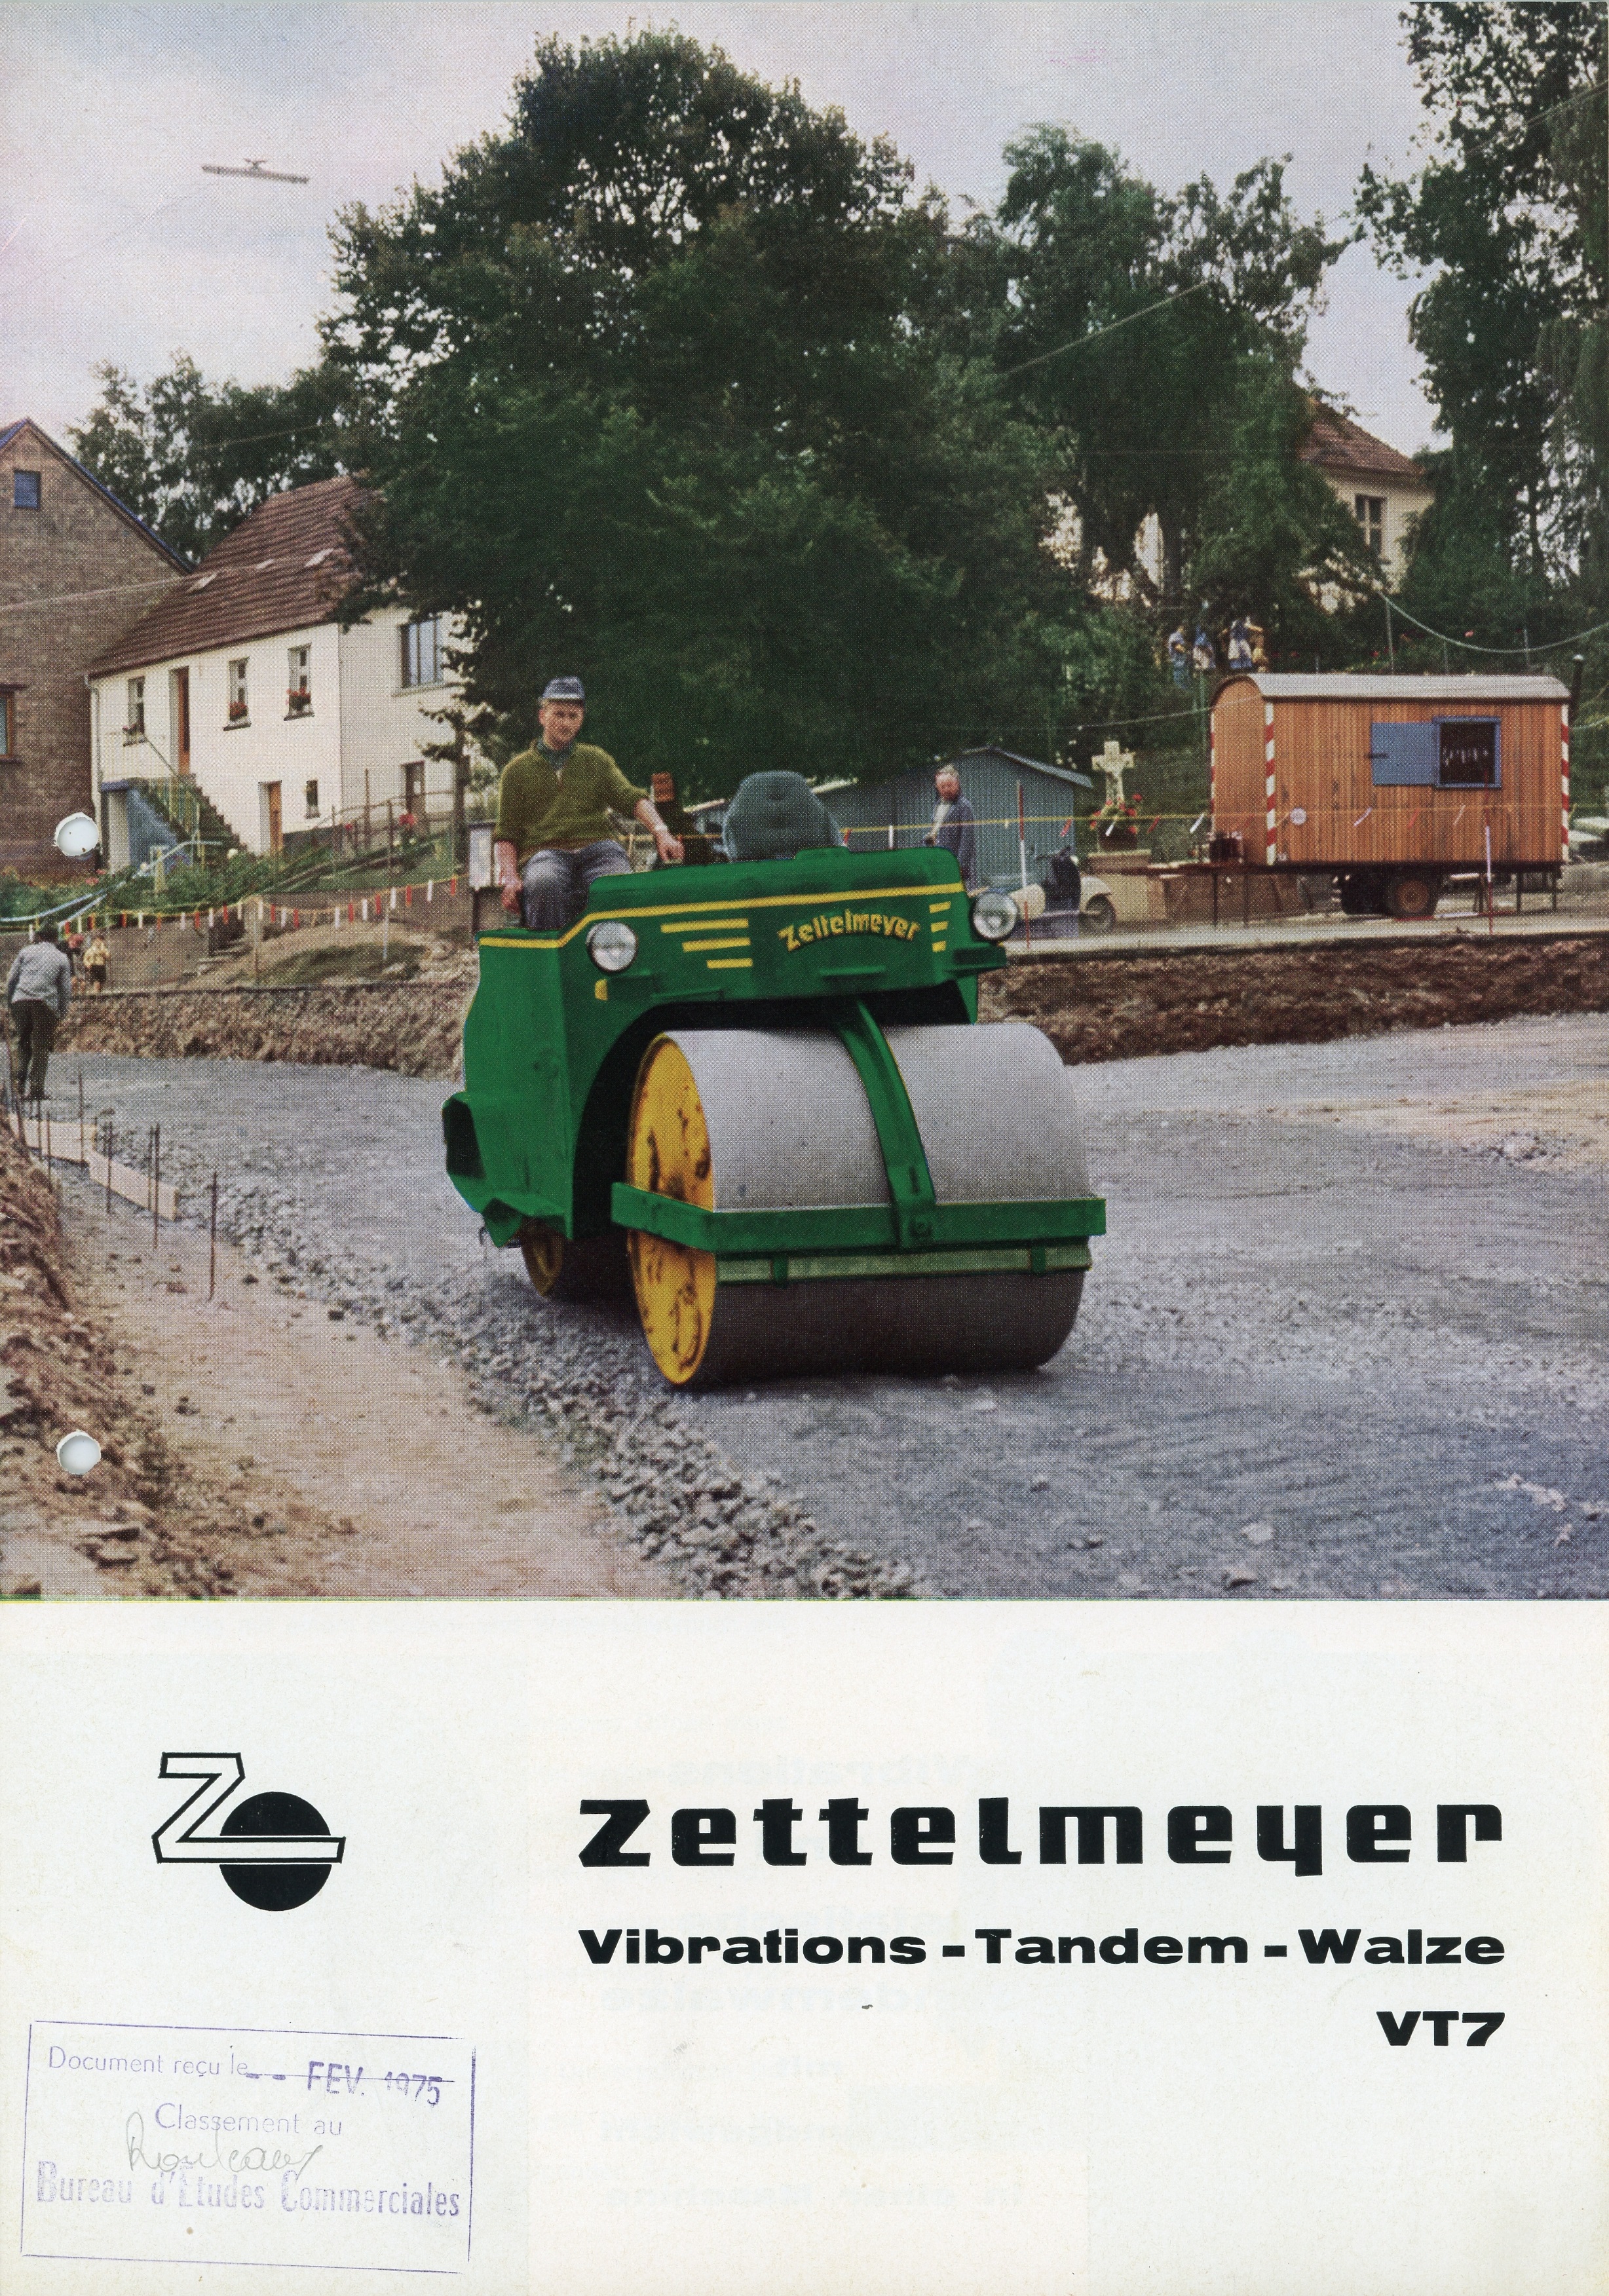 ZETTELMEYER-VT7-101- (1).jpg